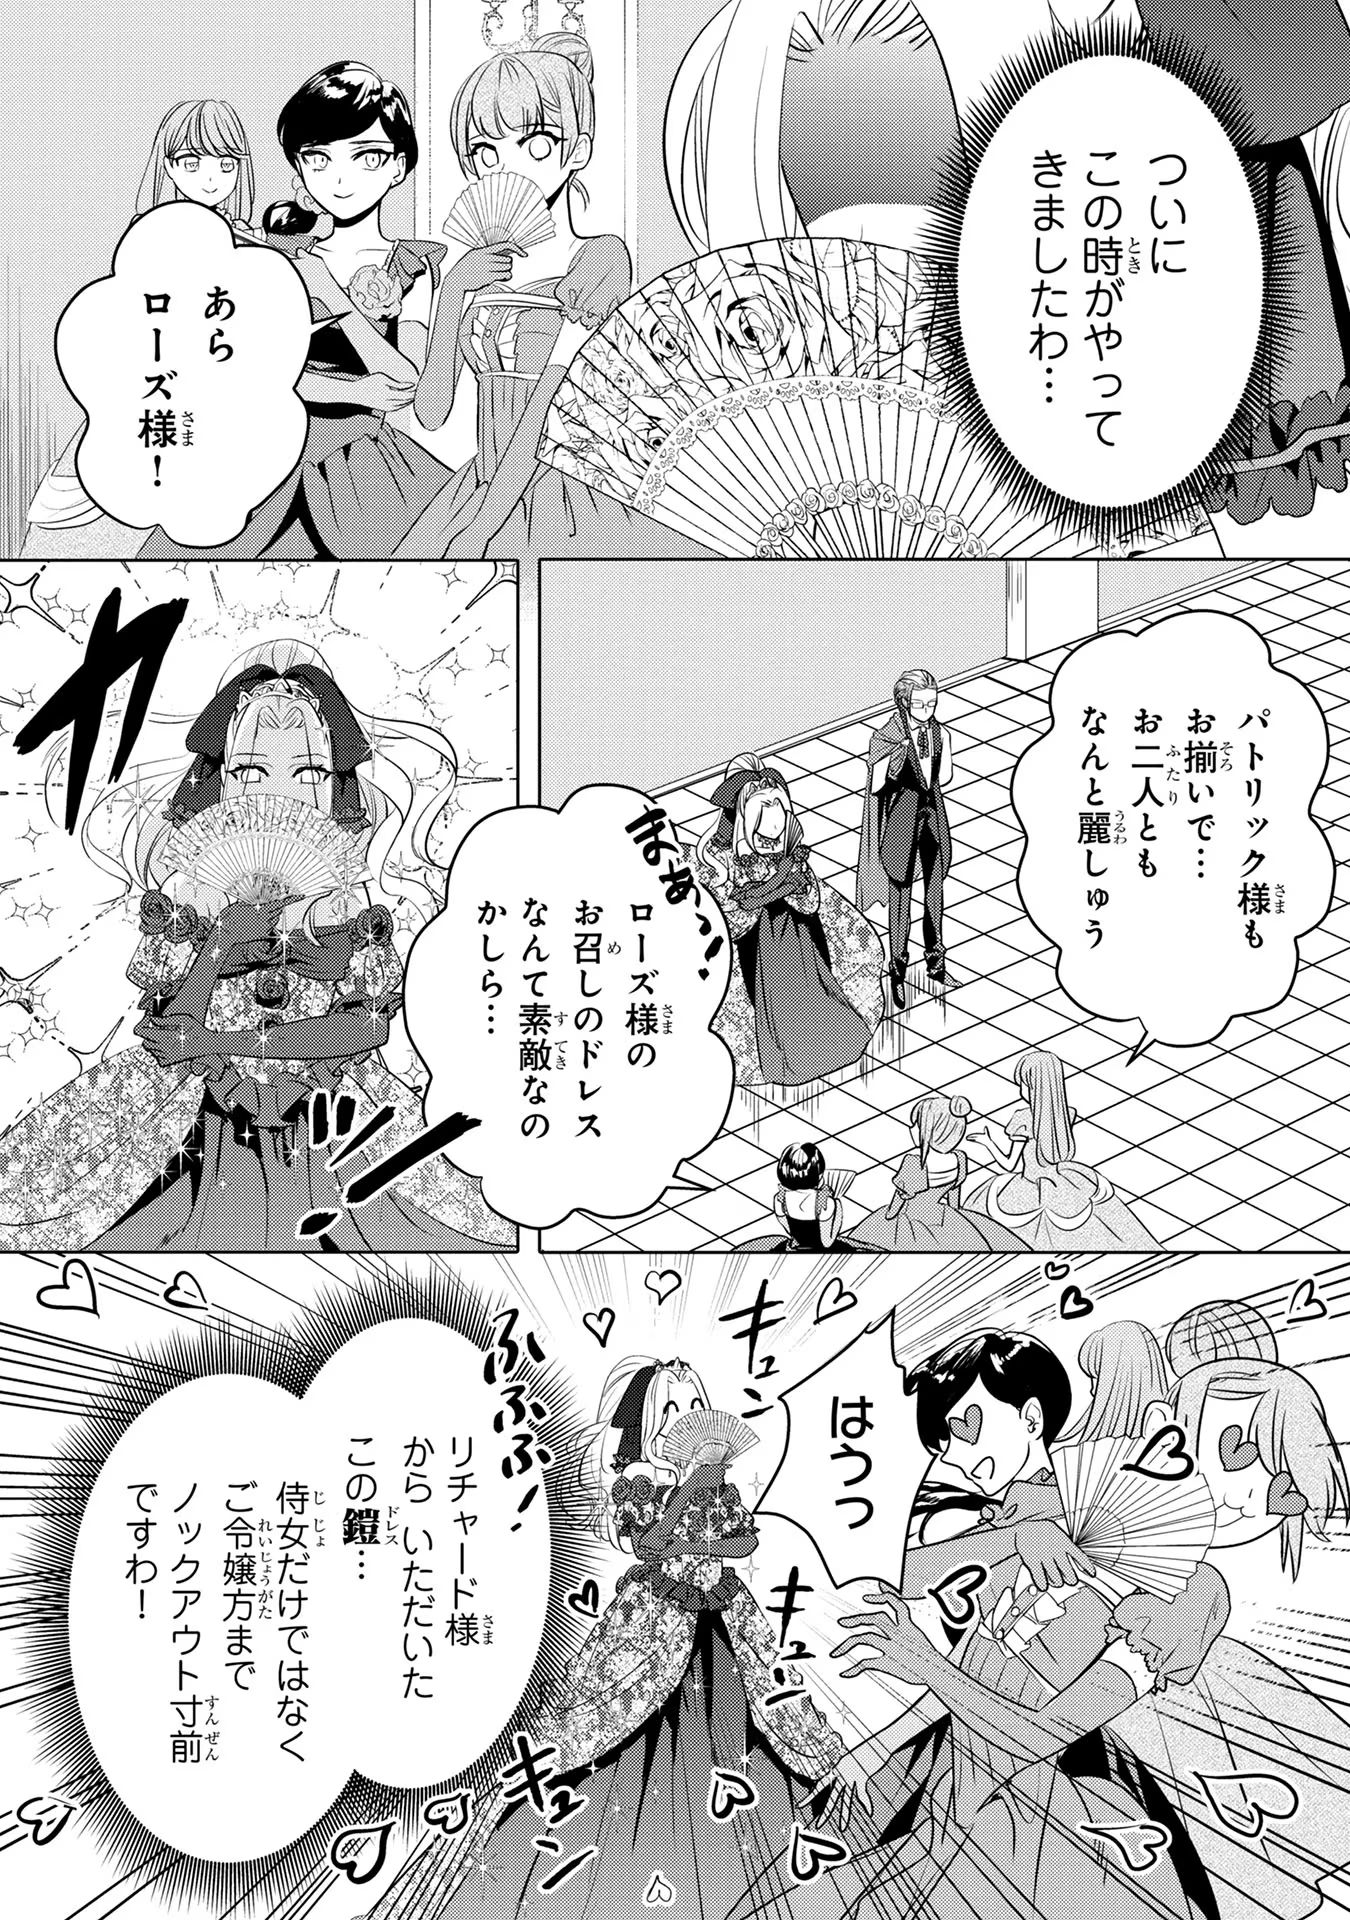 Konyakusha ga Uwaki shite Iru you Nandesu kedo Watashi wa Hayari no Akuyaku Reijou tte Koto Deattemasu ka? - Chapter 27 - Page 2